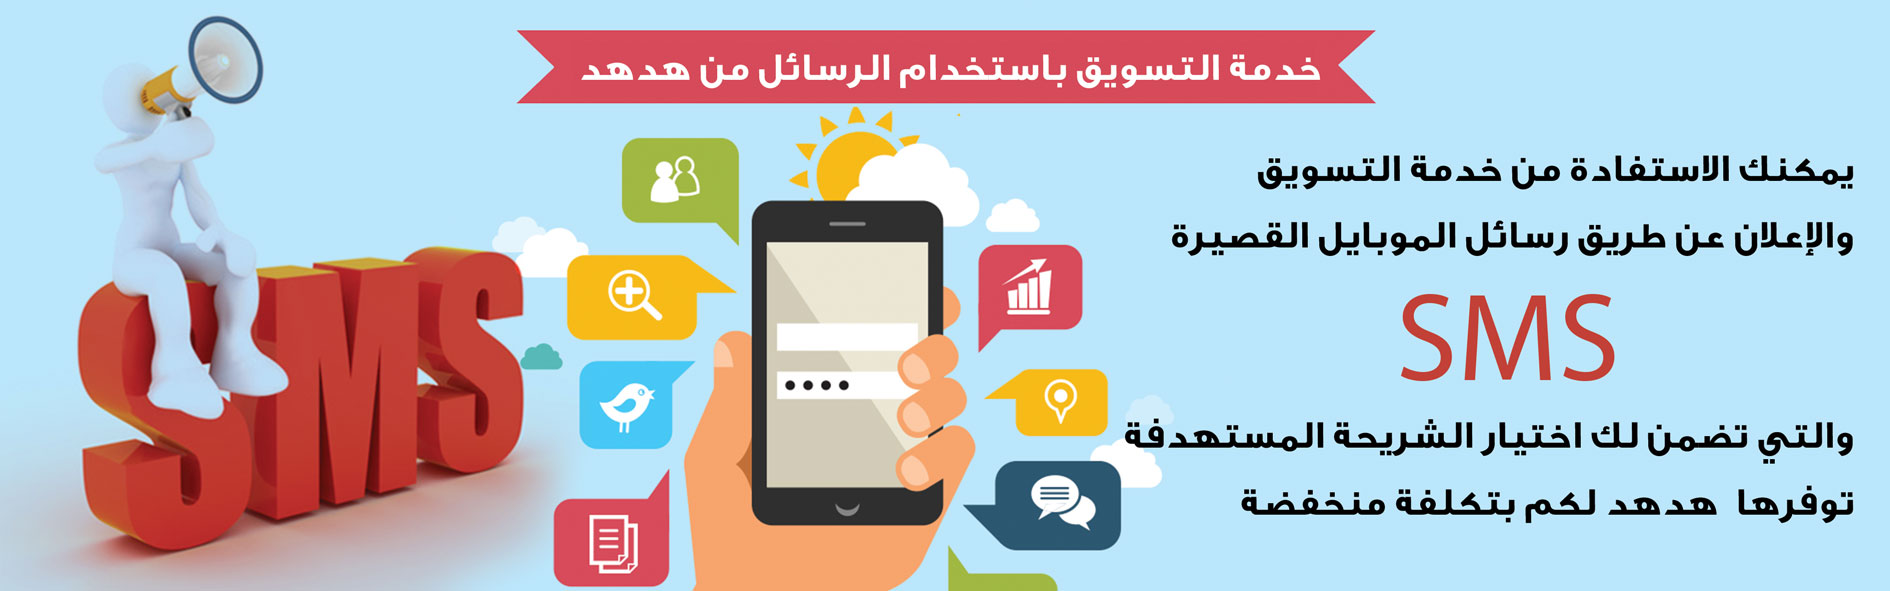 خدمة التسويق باستخدام الرسائل من هدهد -  - جريدة هدهد الإعلانية